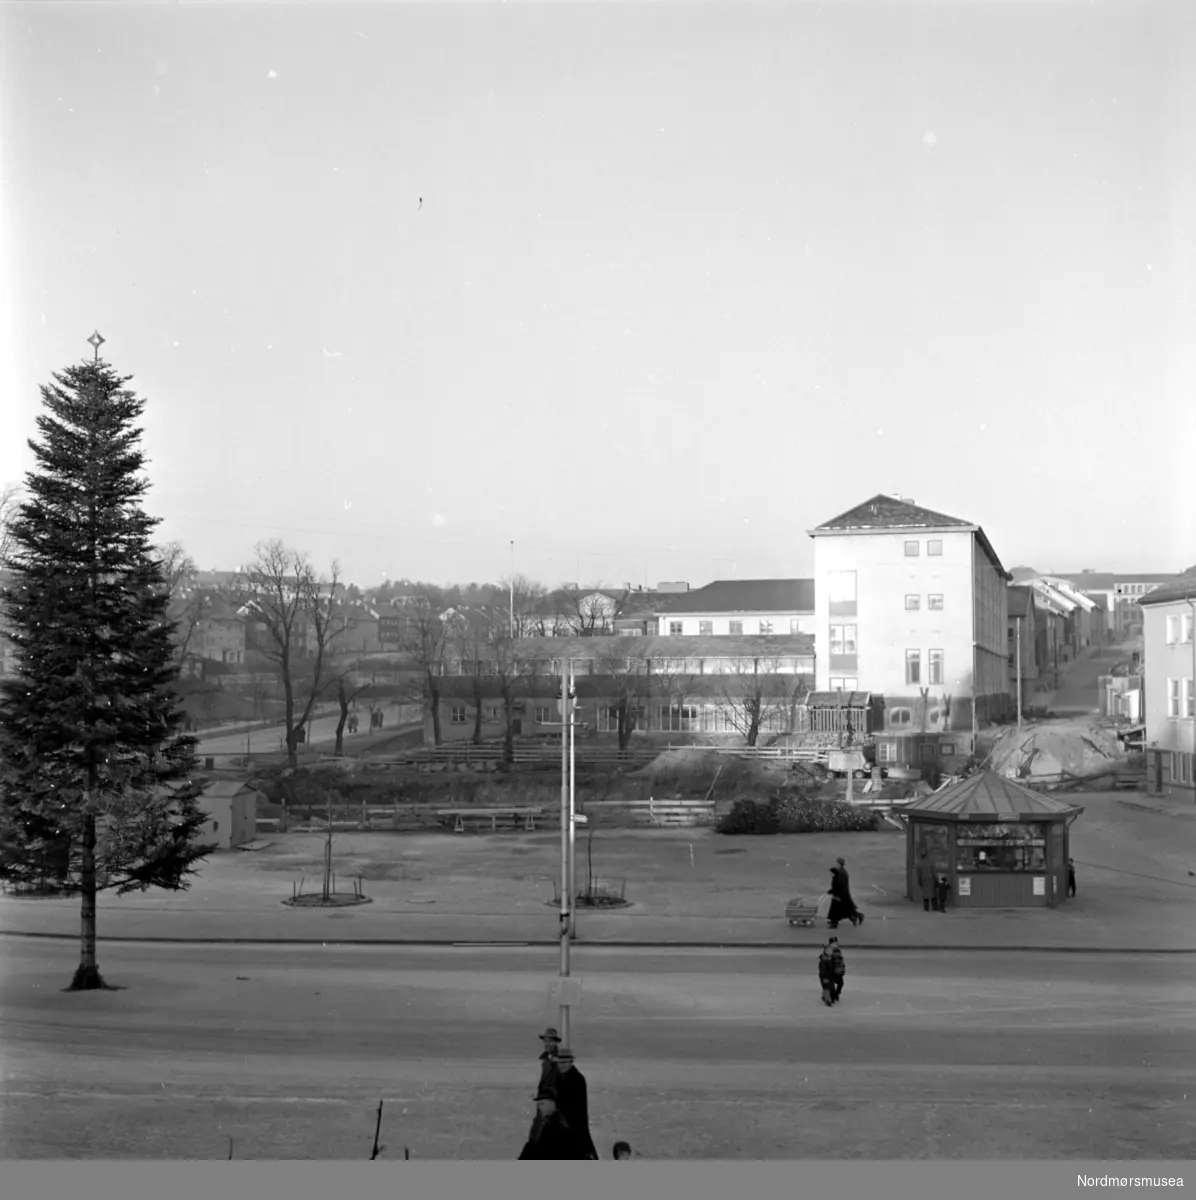 Foto fra Kongens plass hvor snart Folkets hus vil bli reist, på Kirkelandet i Kristiansund. Bildet kan trolig dateres til omkring 1958. Fotograf er Nils Williams. Fra Nordmøre museums fotosamlinger.